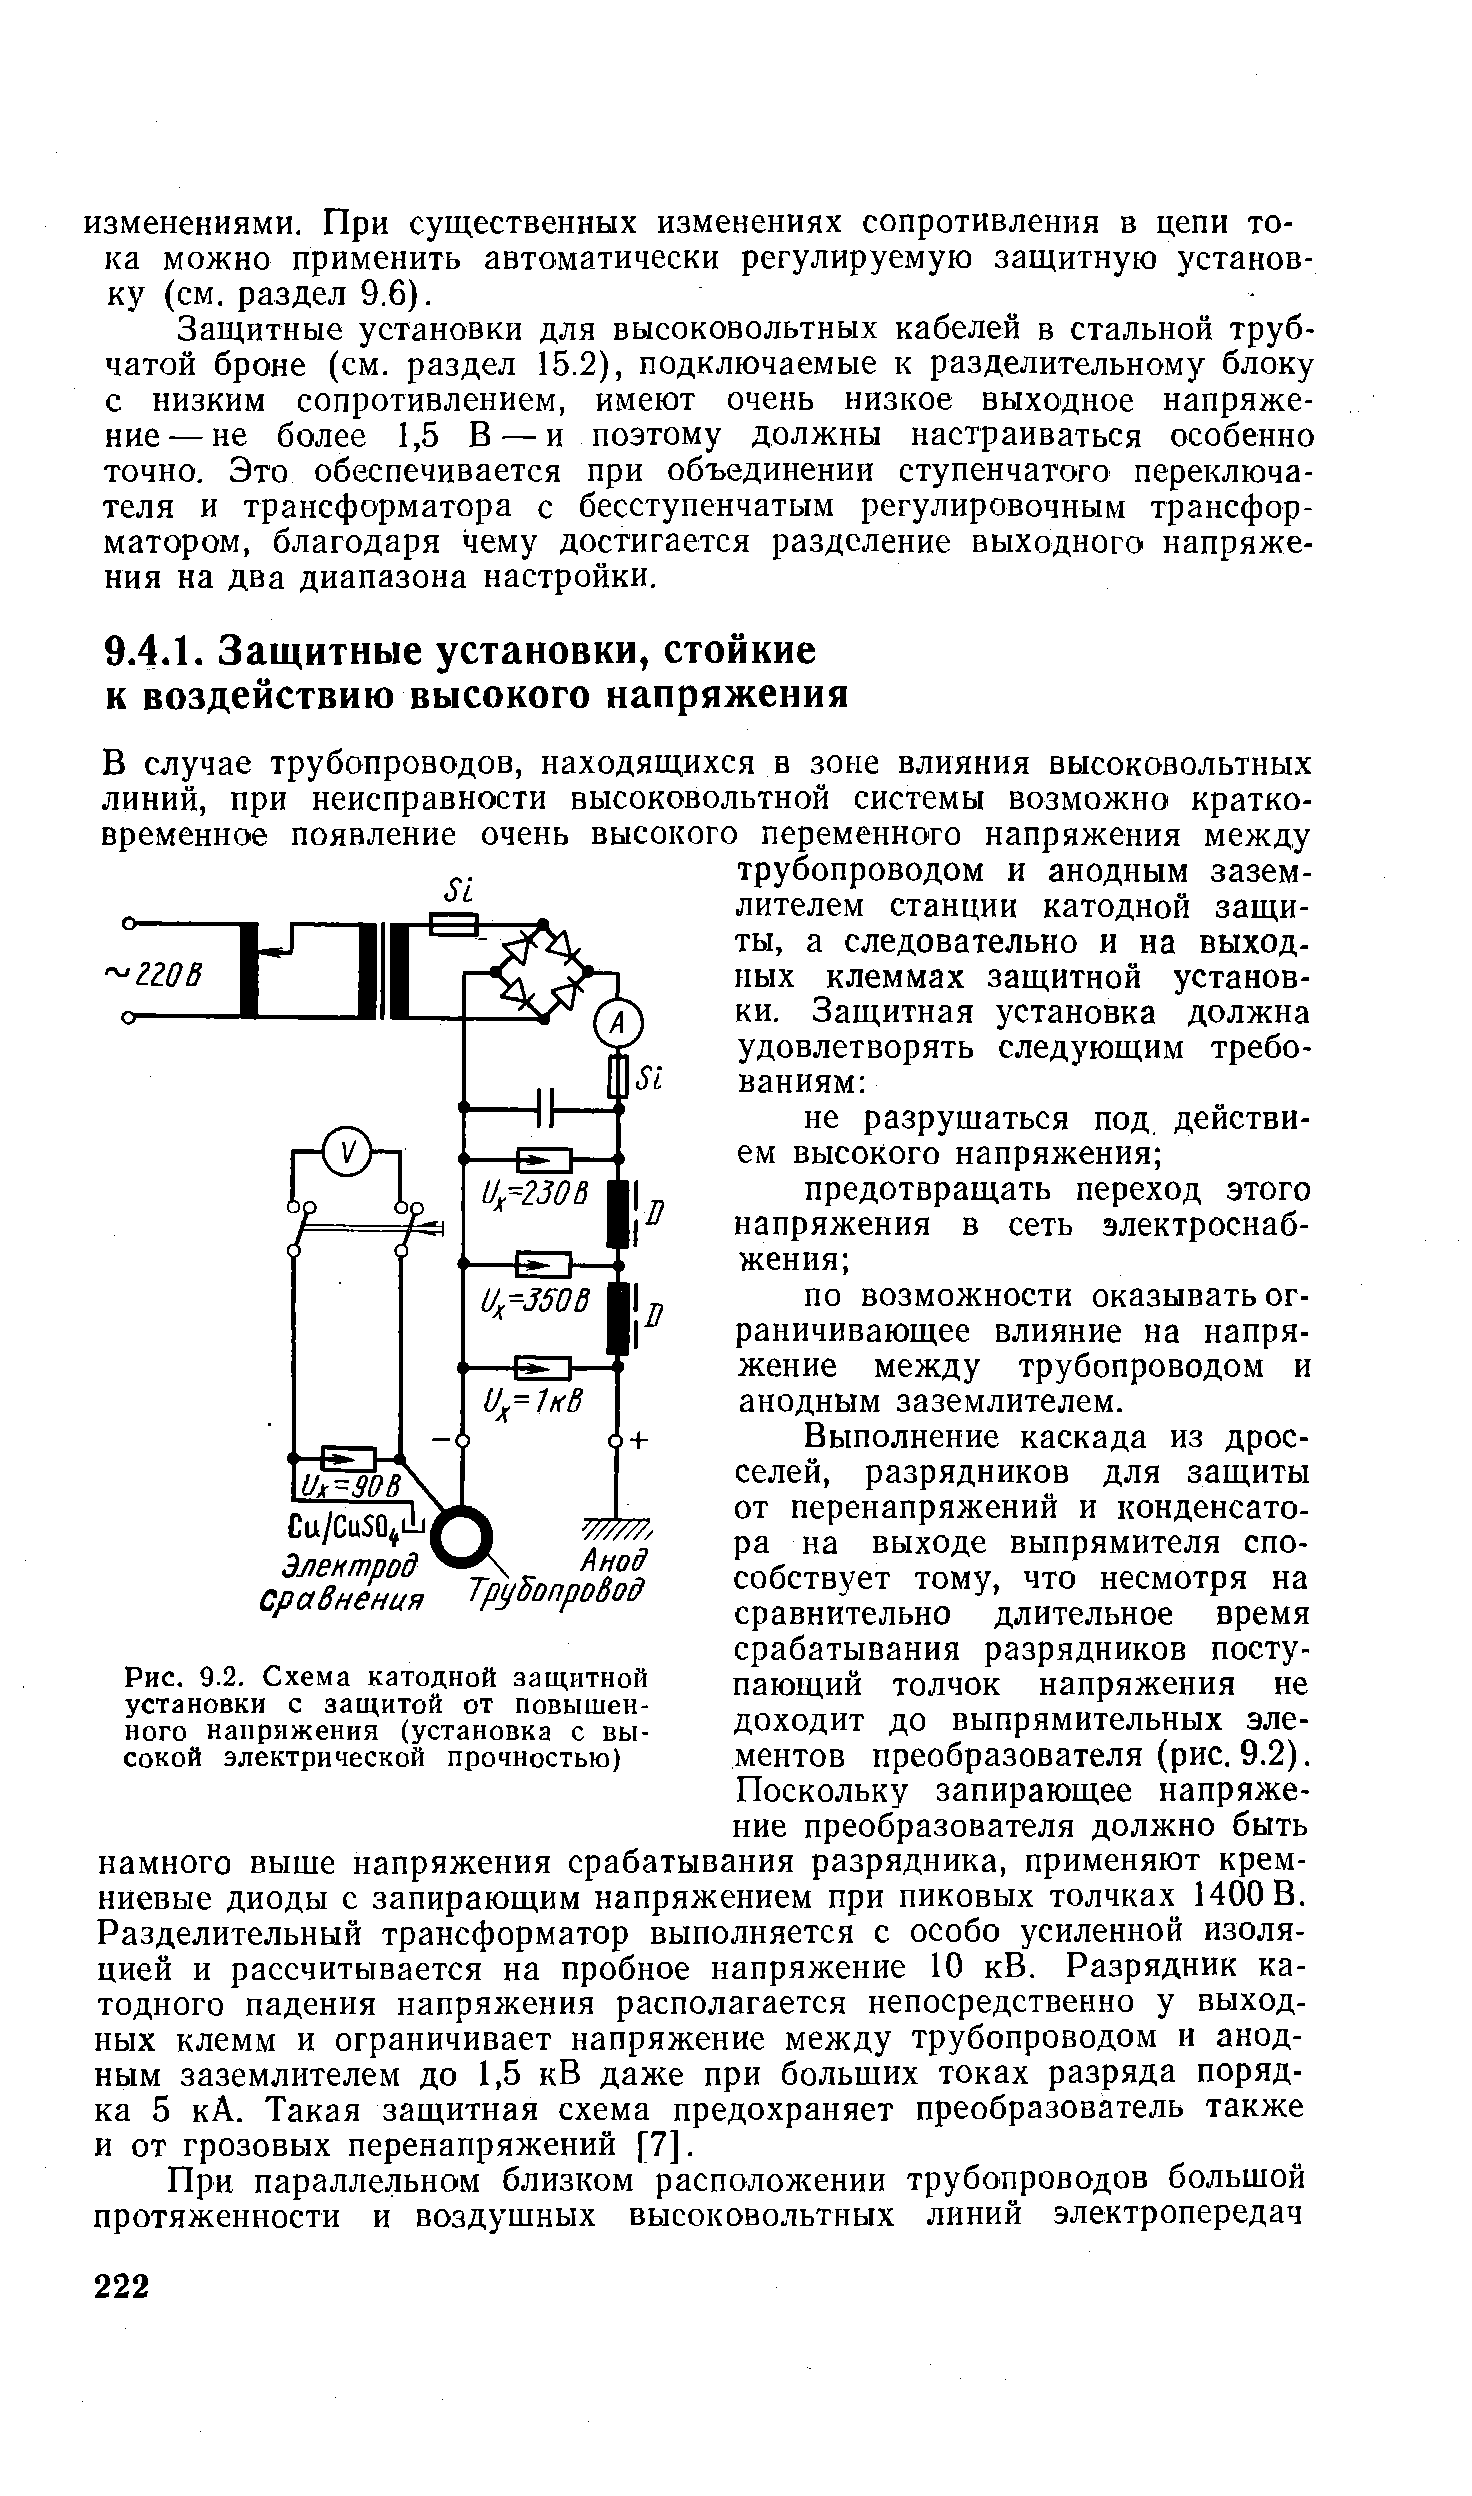 Рис. 9.2. Схема катодной защитной установки с защитой от повышенного наприжения (установка с высокой электрической прочностью)
